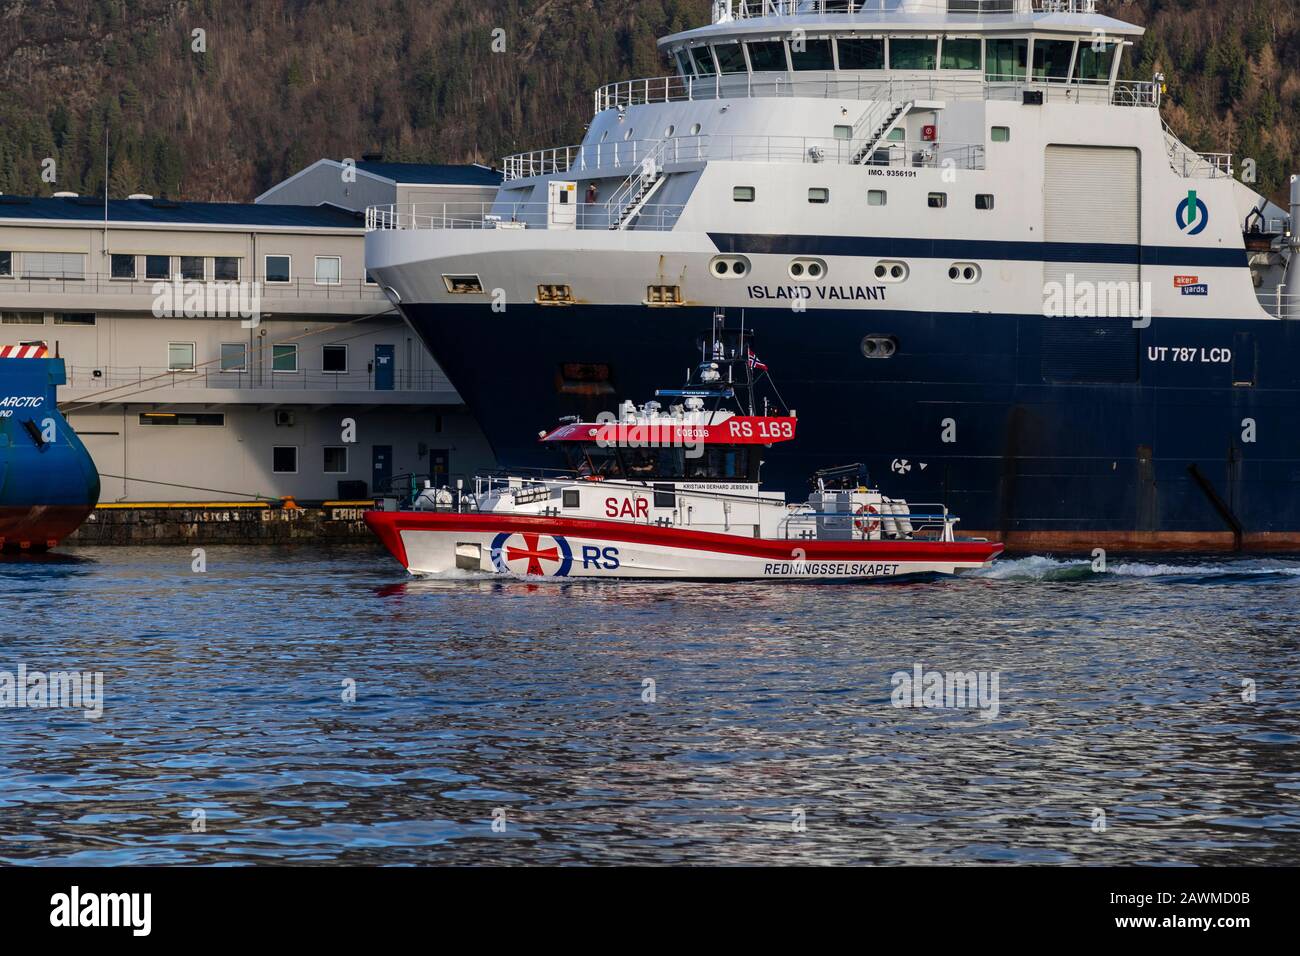 Bateau de sauvetage maritime à grande vitesse Kristian Gerhard Jebsen II dans le port de Bergen, Norvège. En passant par Island Vailant, un navire d'approvisionnement offshore Banque D'Images